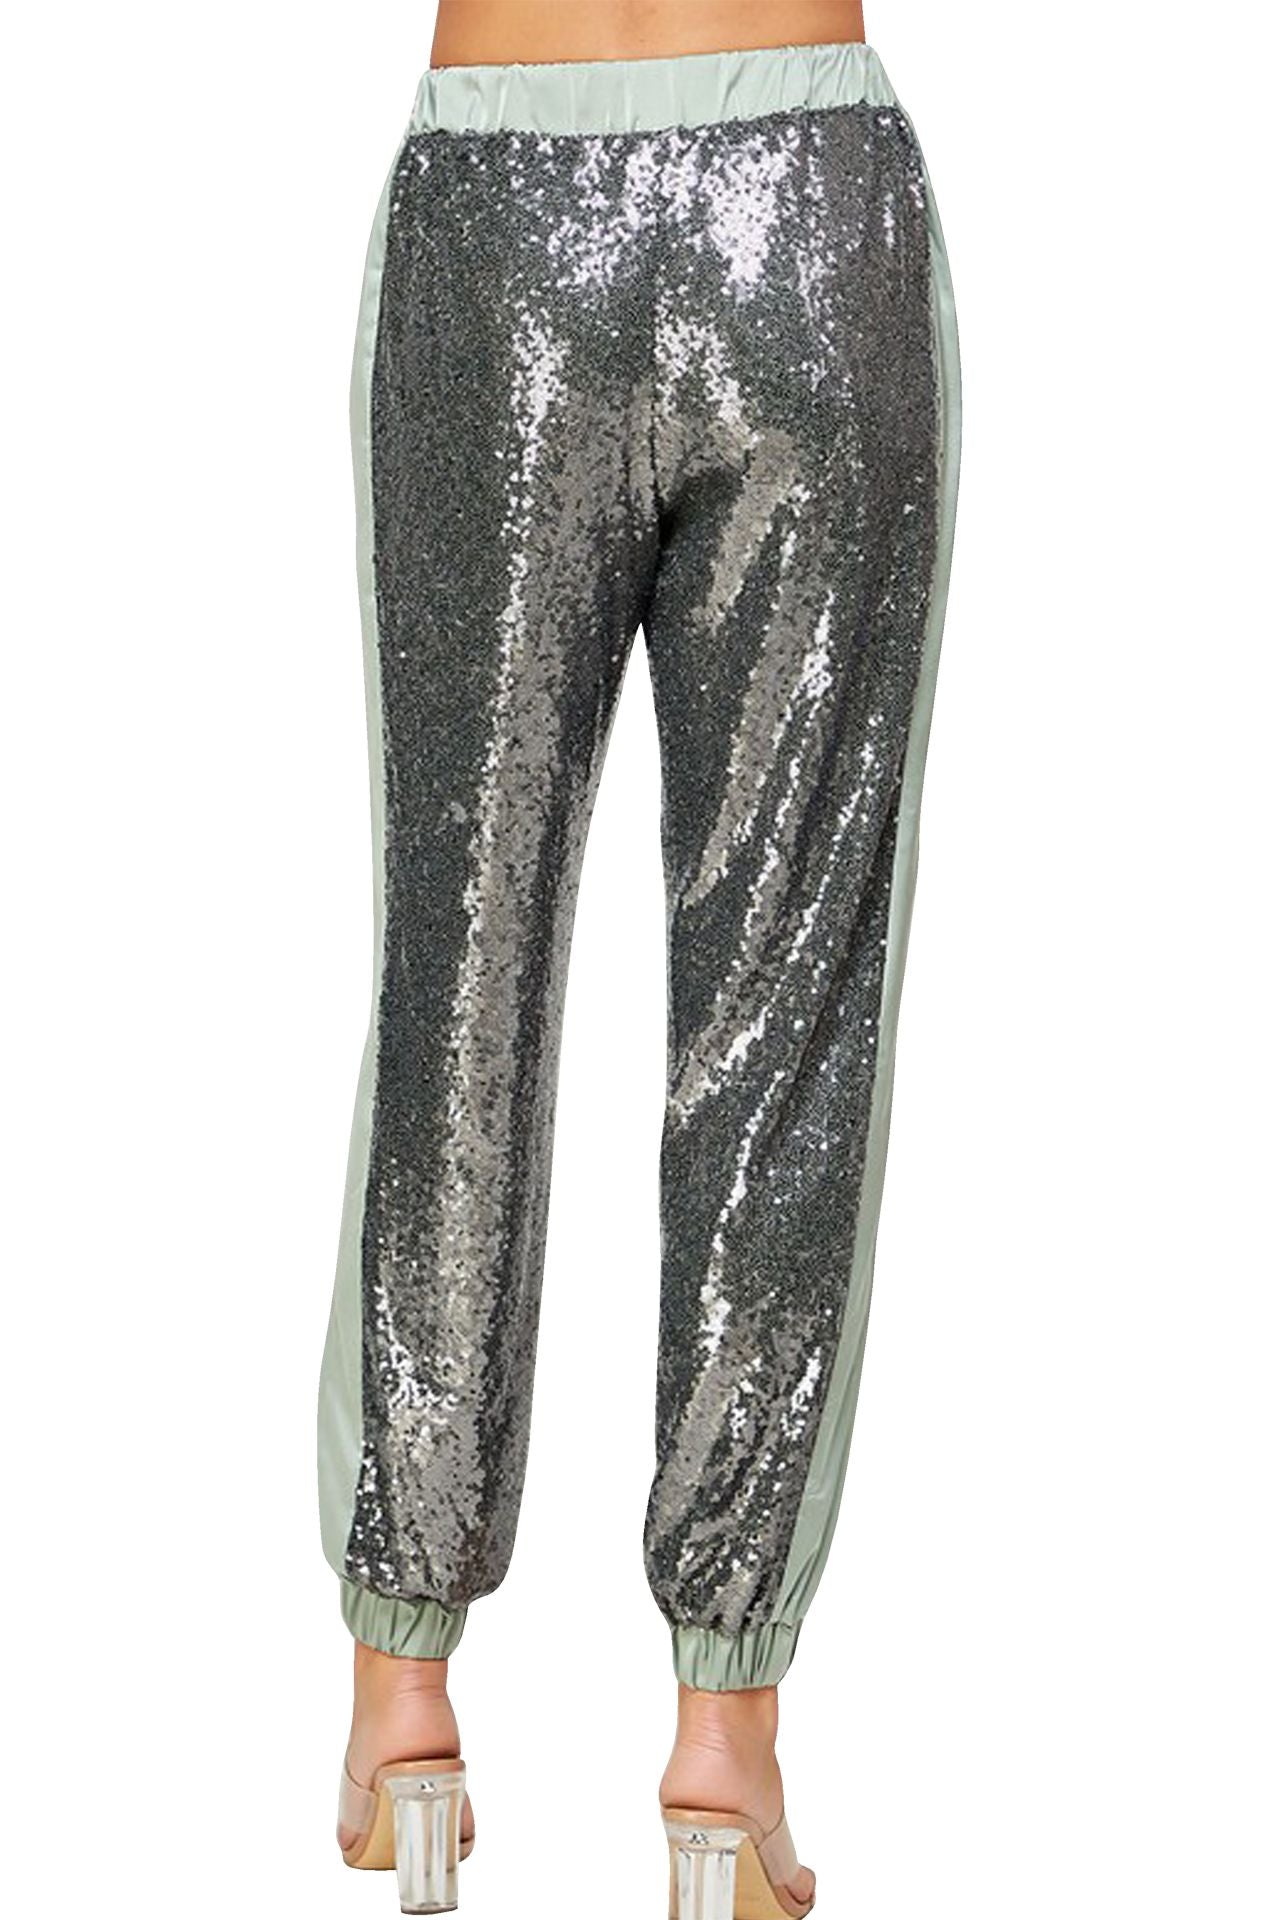 "silver jogging pants" "plus size sequin joggers" "women's sequin jogger pants" "Kyle X Shahida"